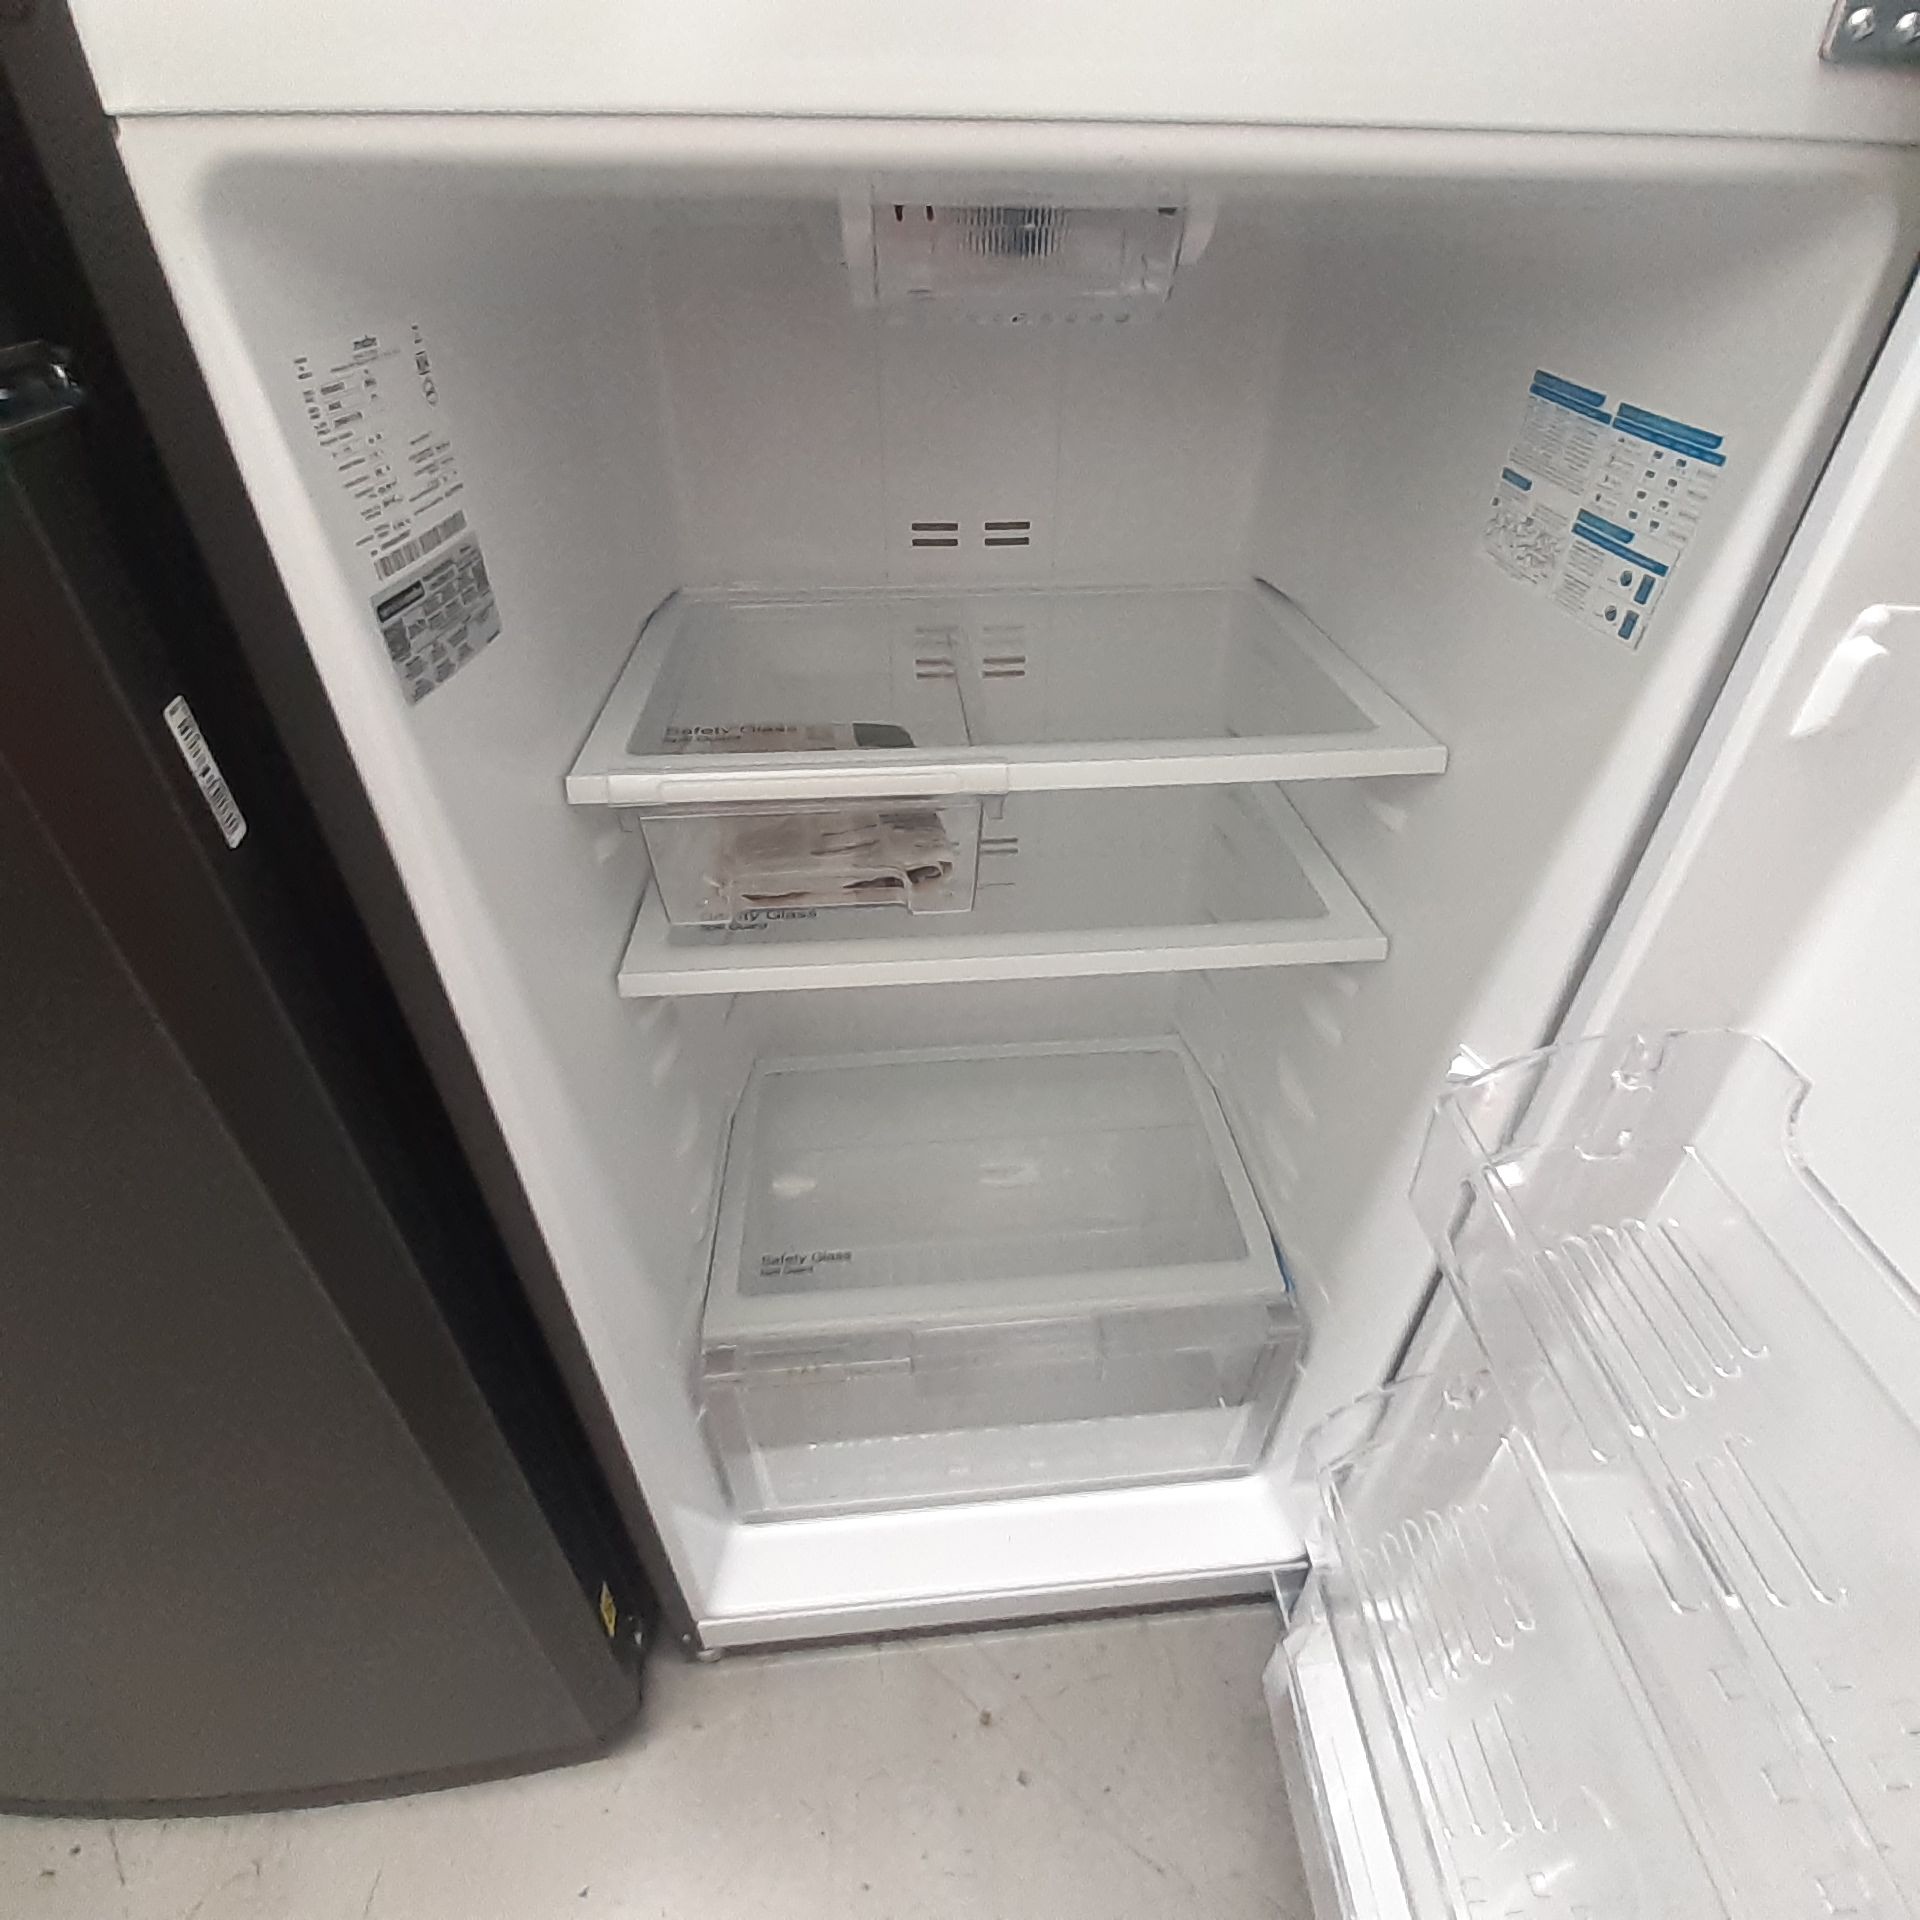 Lote De 2 Refrigeradores: 1 Refrigerador Marca Whirlpool, 1 Refrigerador Marca Mabe, Distintos Model - Image 15 of 22